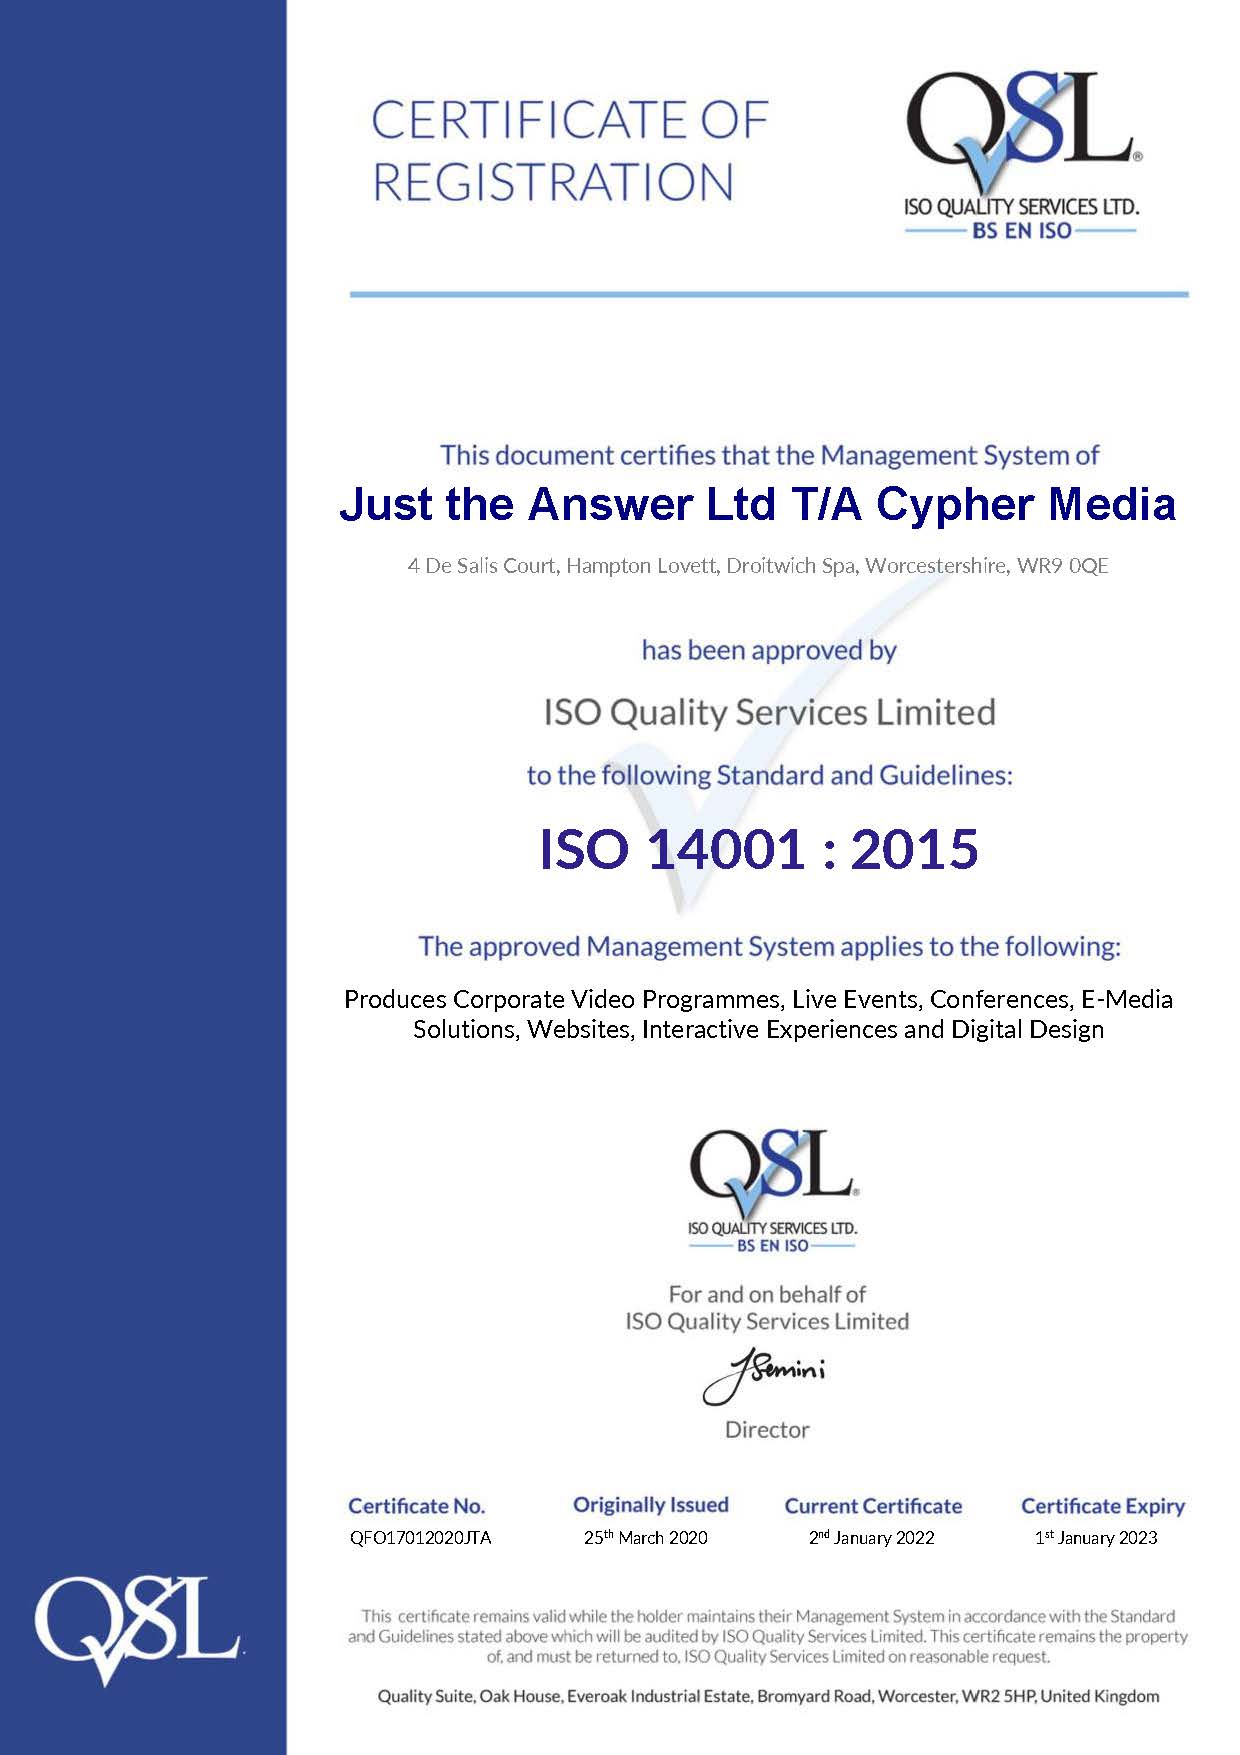 We're ISO 14001 recertified!